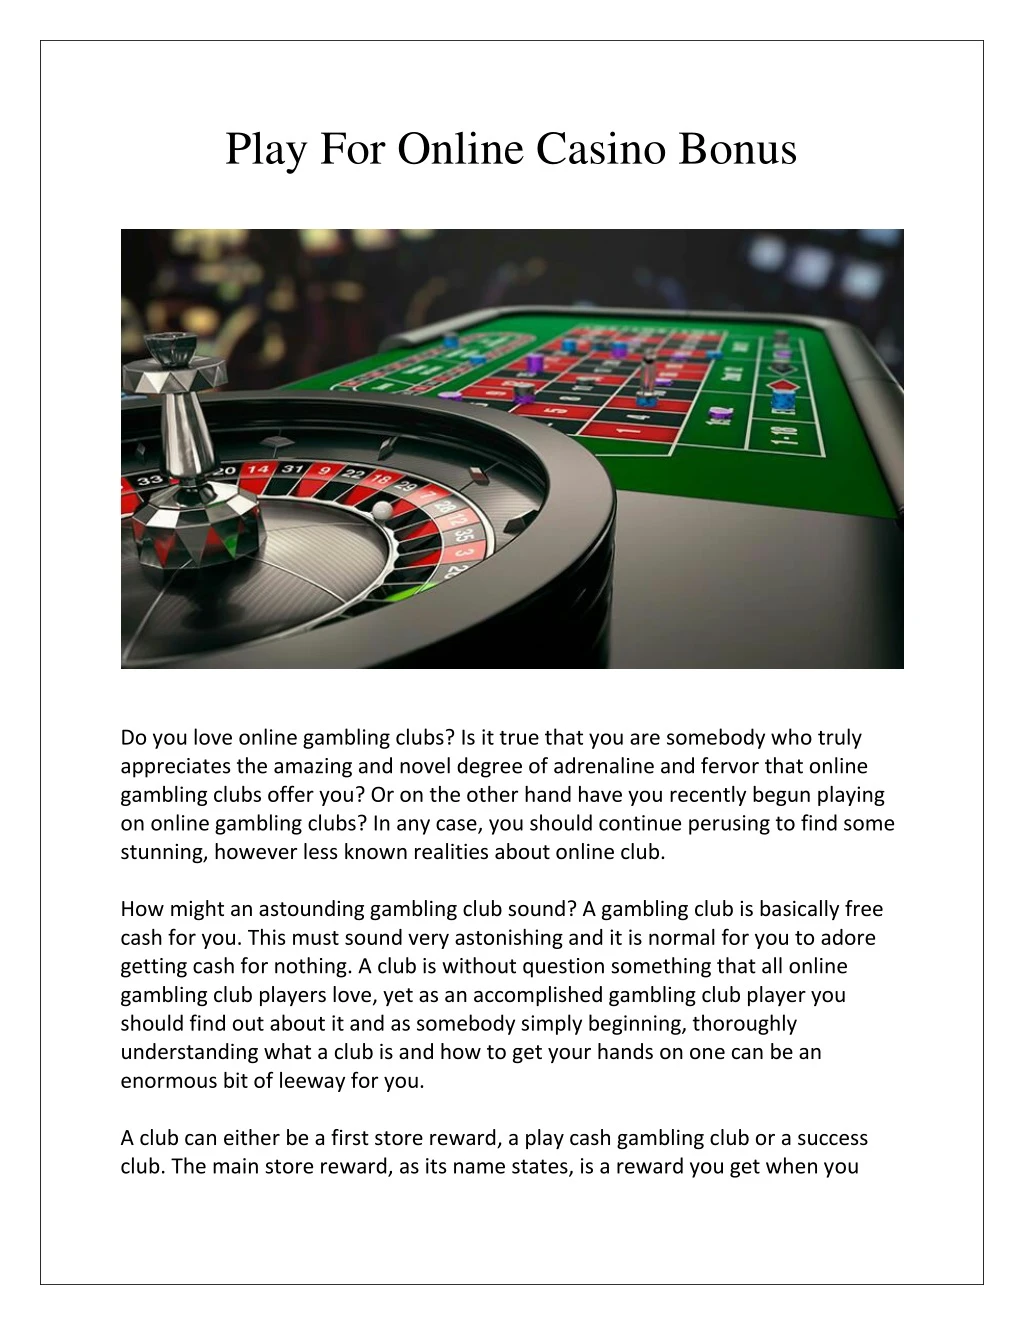 play for online casino bonus